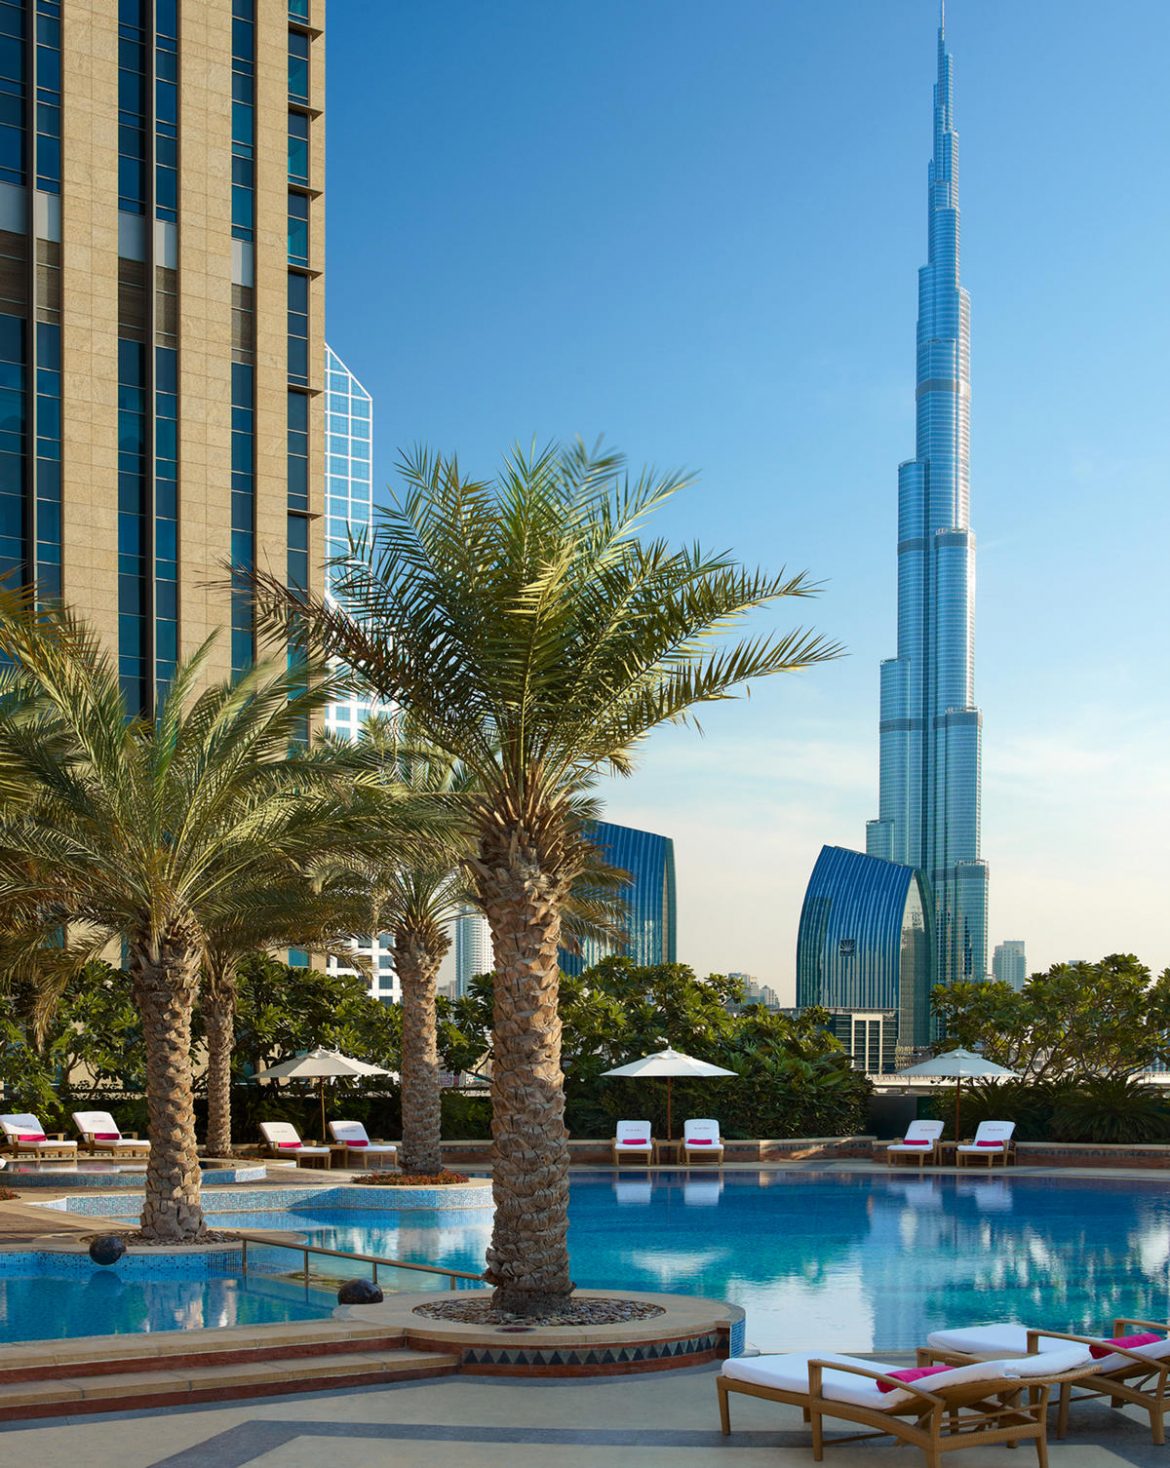 Review: Shangri-La Hotel Dubai: A delightful city escape well worth